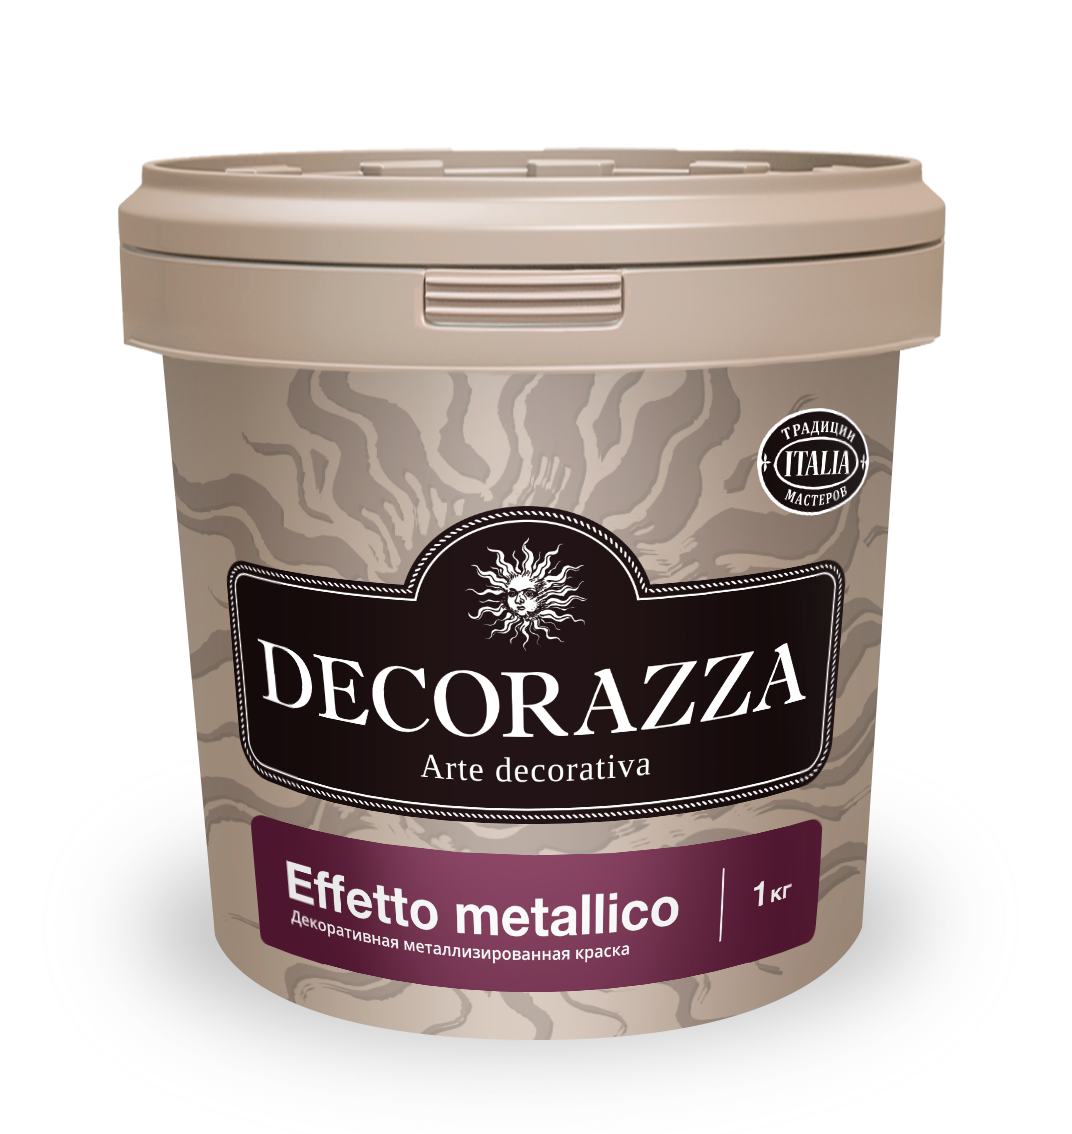 Декоративное покрытие Decorazza Effetto metallico Bianco EM 103, 1 л